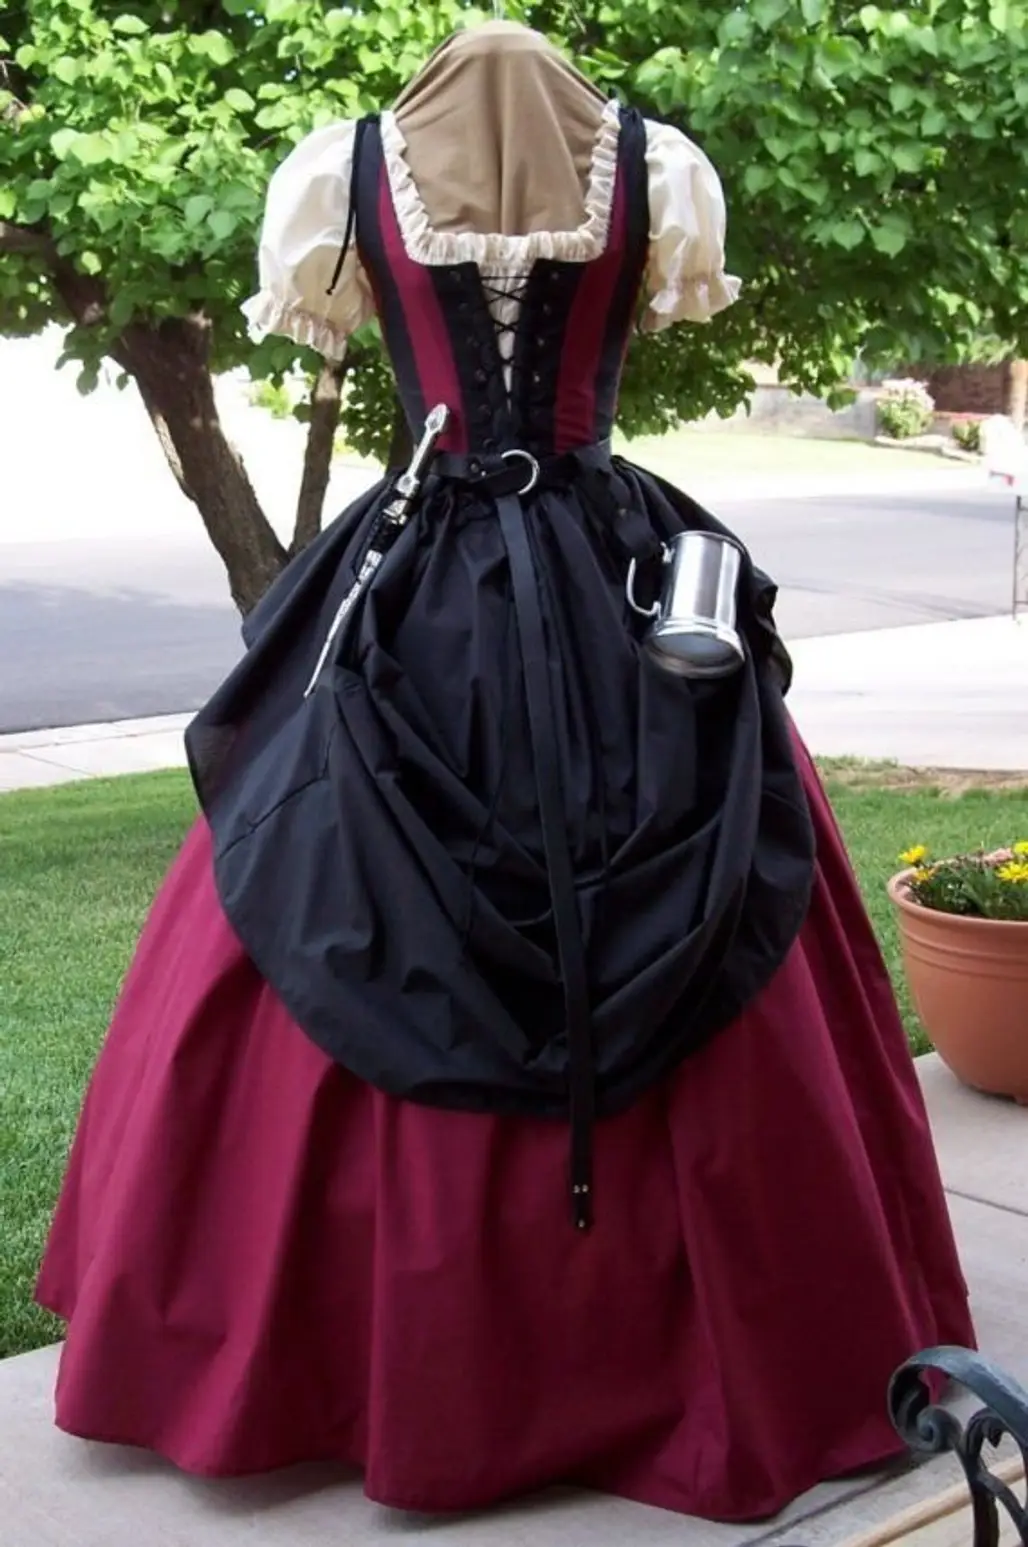 FAB Renaissance/Medieval Corset Bustier Costume PATTERN